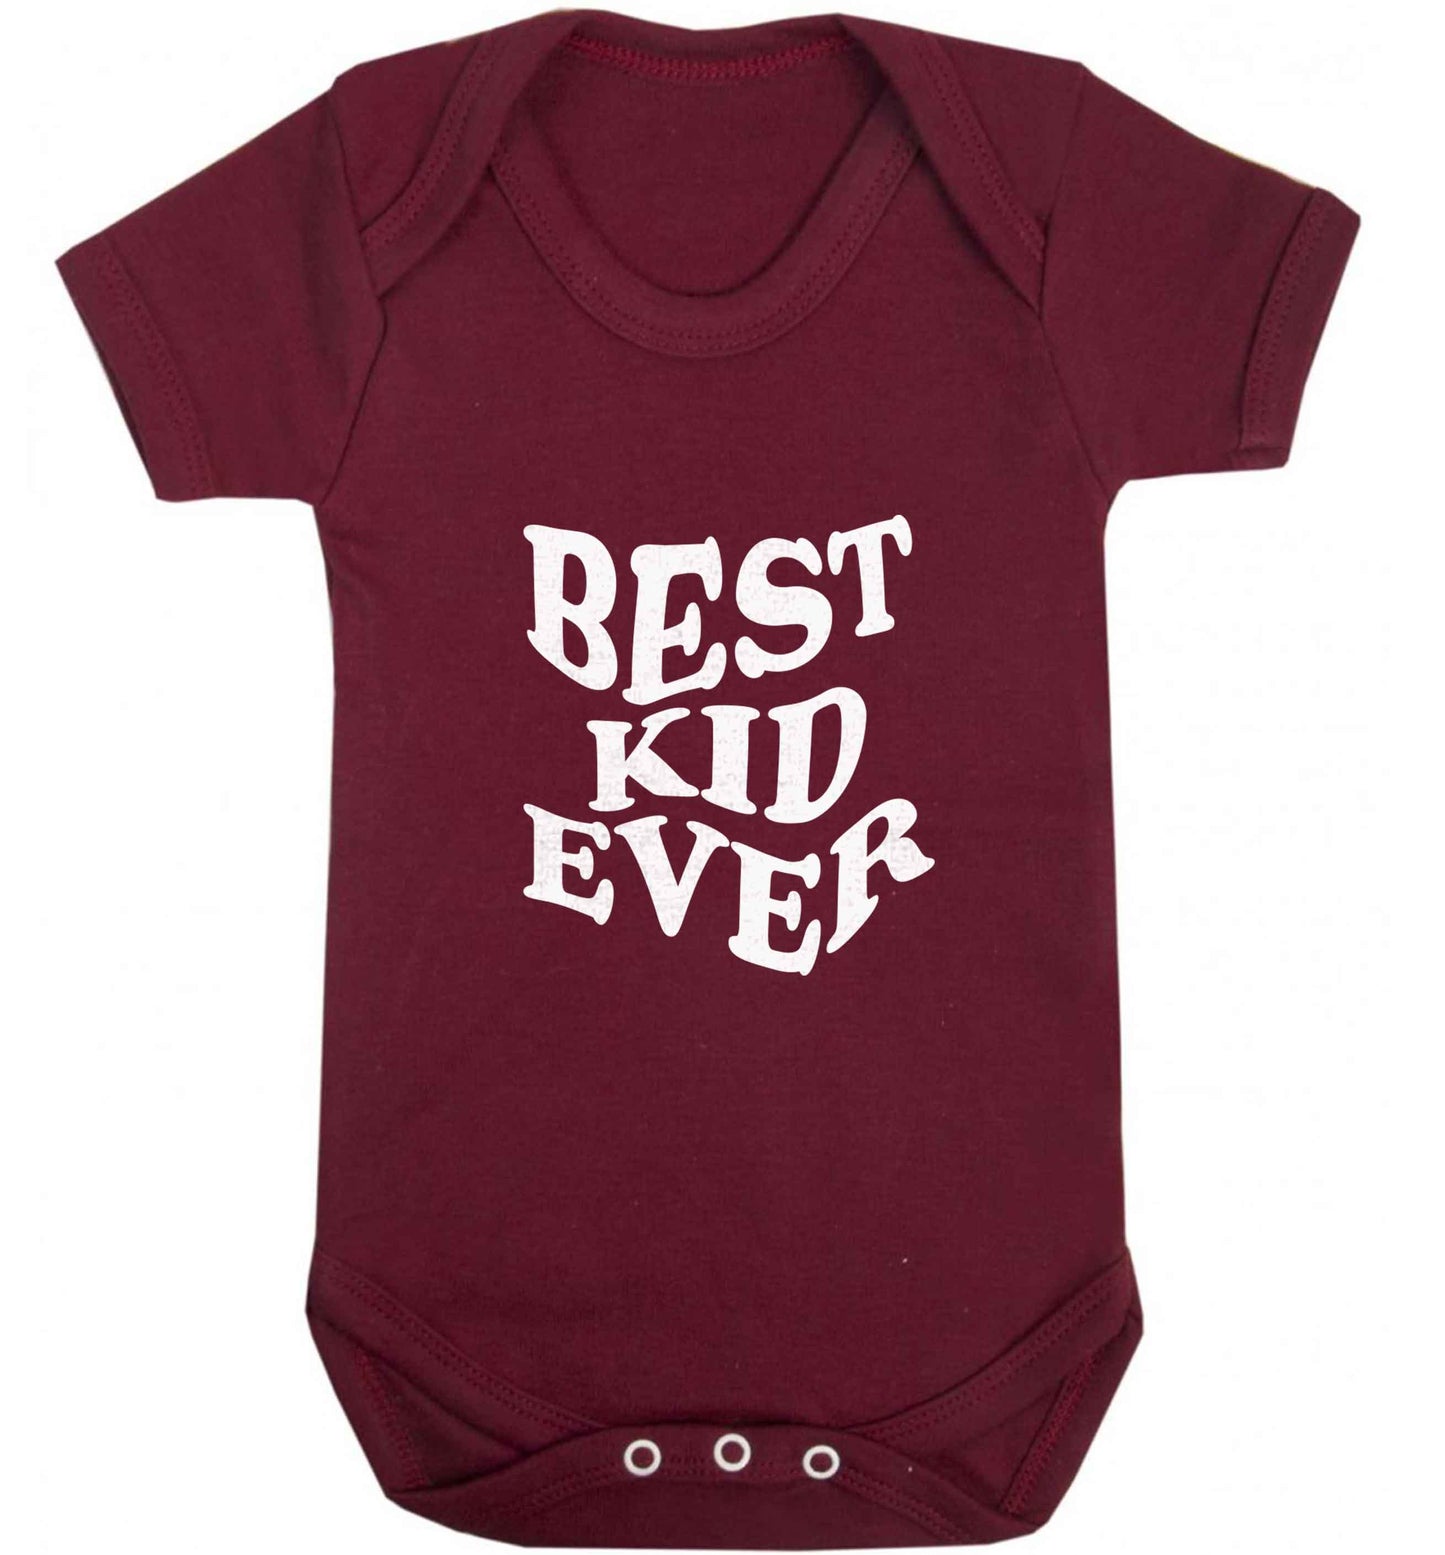 Best kid ever baby vest maroon 18-24 months